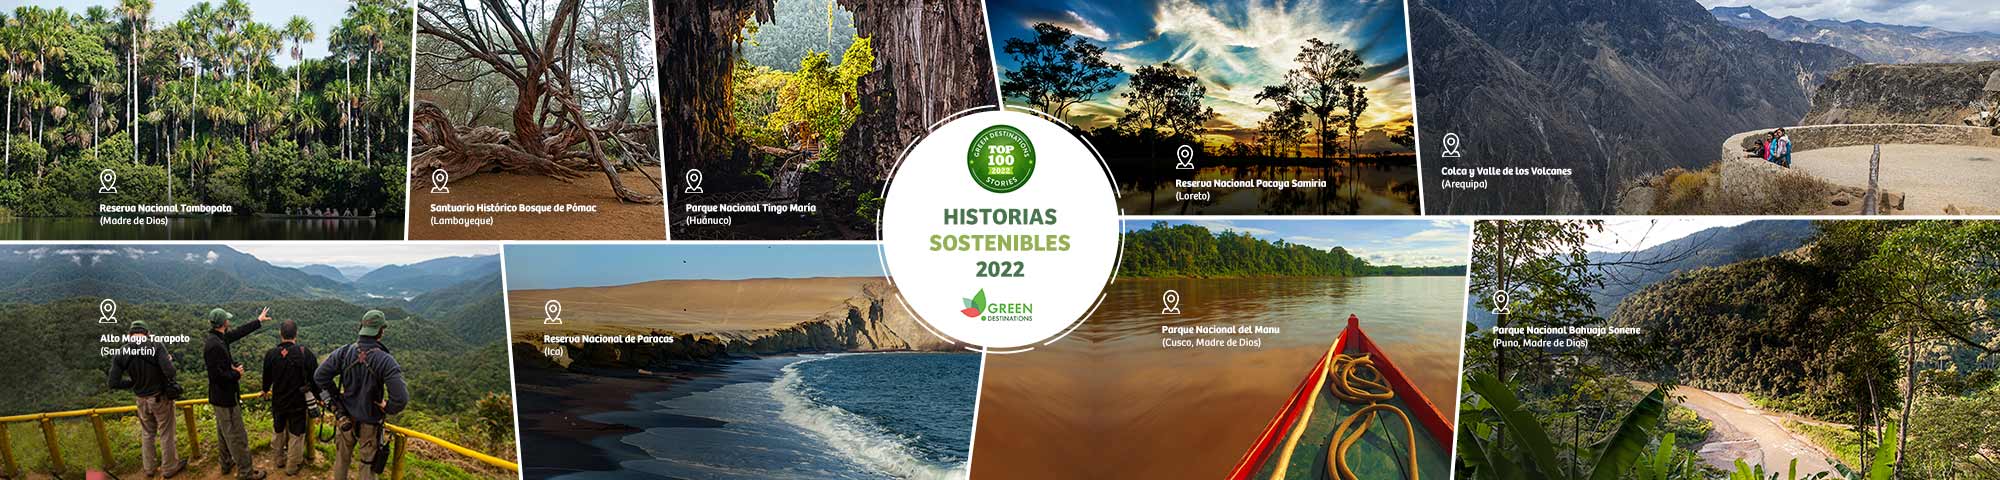 Destacan mención de Perú entre 100 destinos turísticos sostenibles 